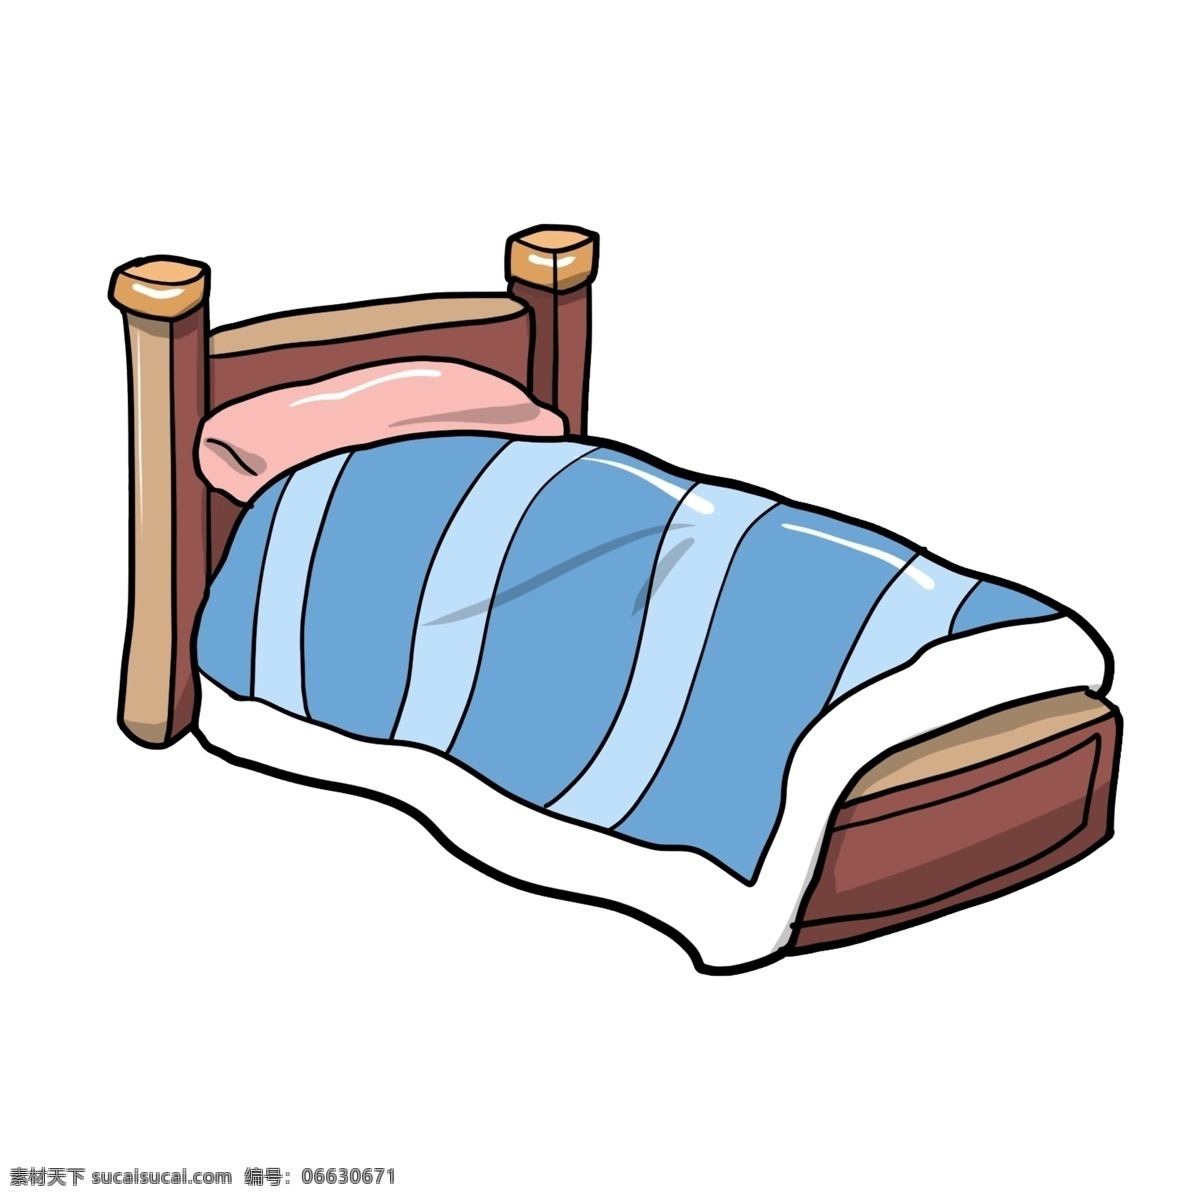 褐色 单人床 插画 褐色的床 蓝色的被子 手绘木床 家具家装 漂亮的木床 卡通木床 木床插画